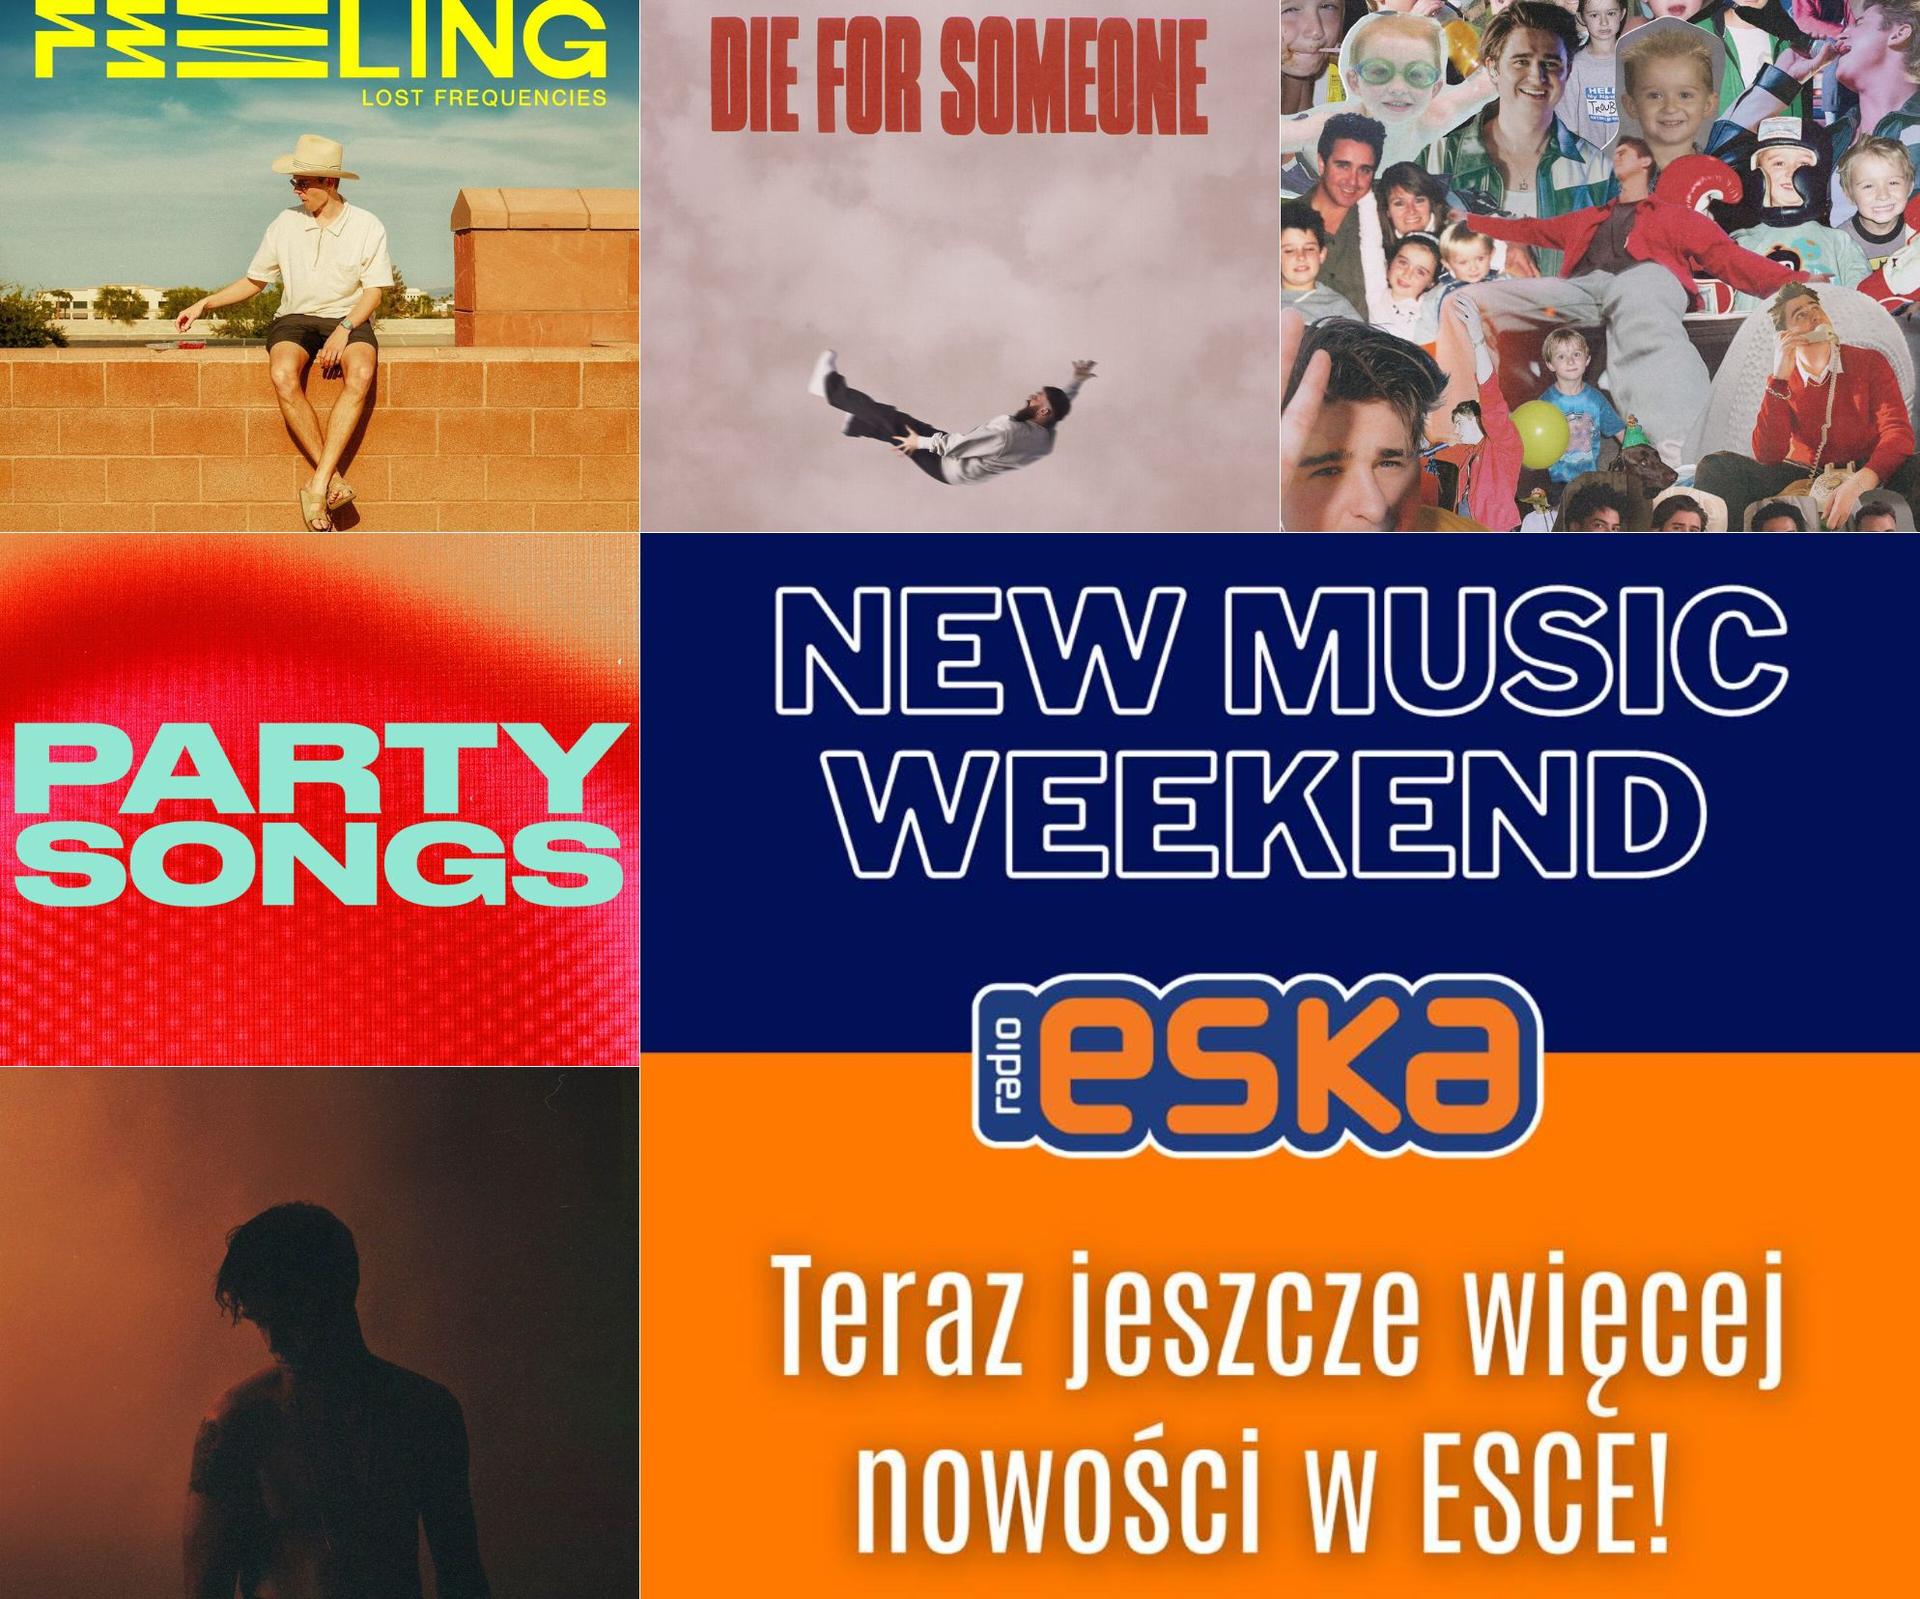 Lost frecvențe, Mikolas Josef și alții cu premierele lor la sfârșitul săptămânii în noua muzică de la Radio ESKA!